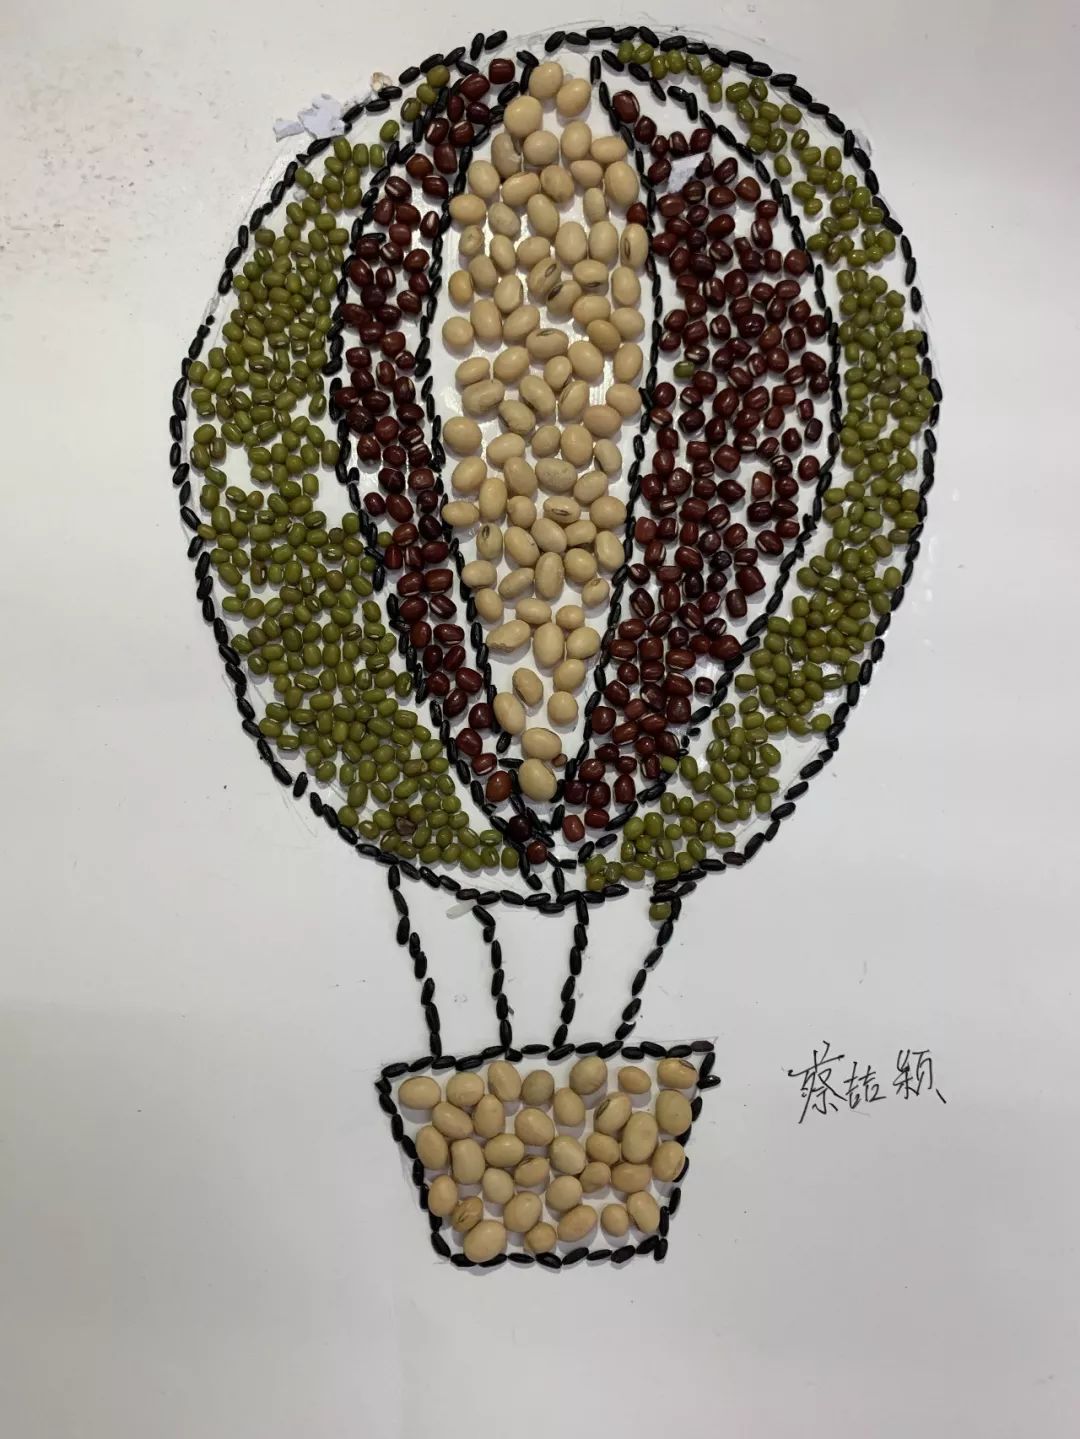 创意无限——漳州立人学校七年级立人杯种子贴画竞赛优秀作品展